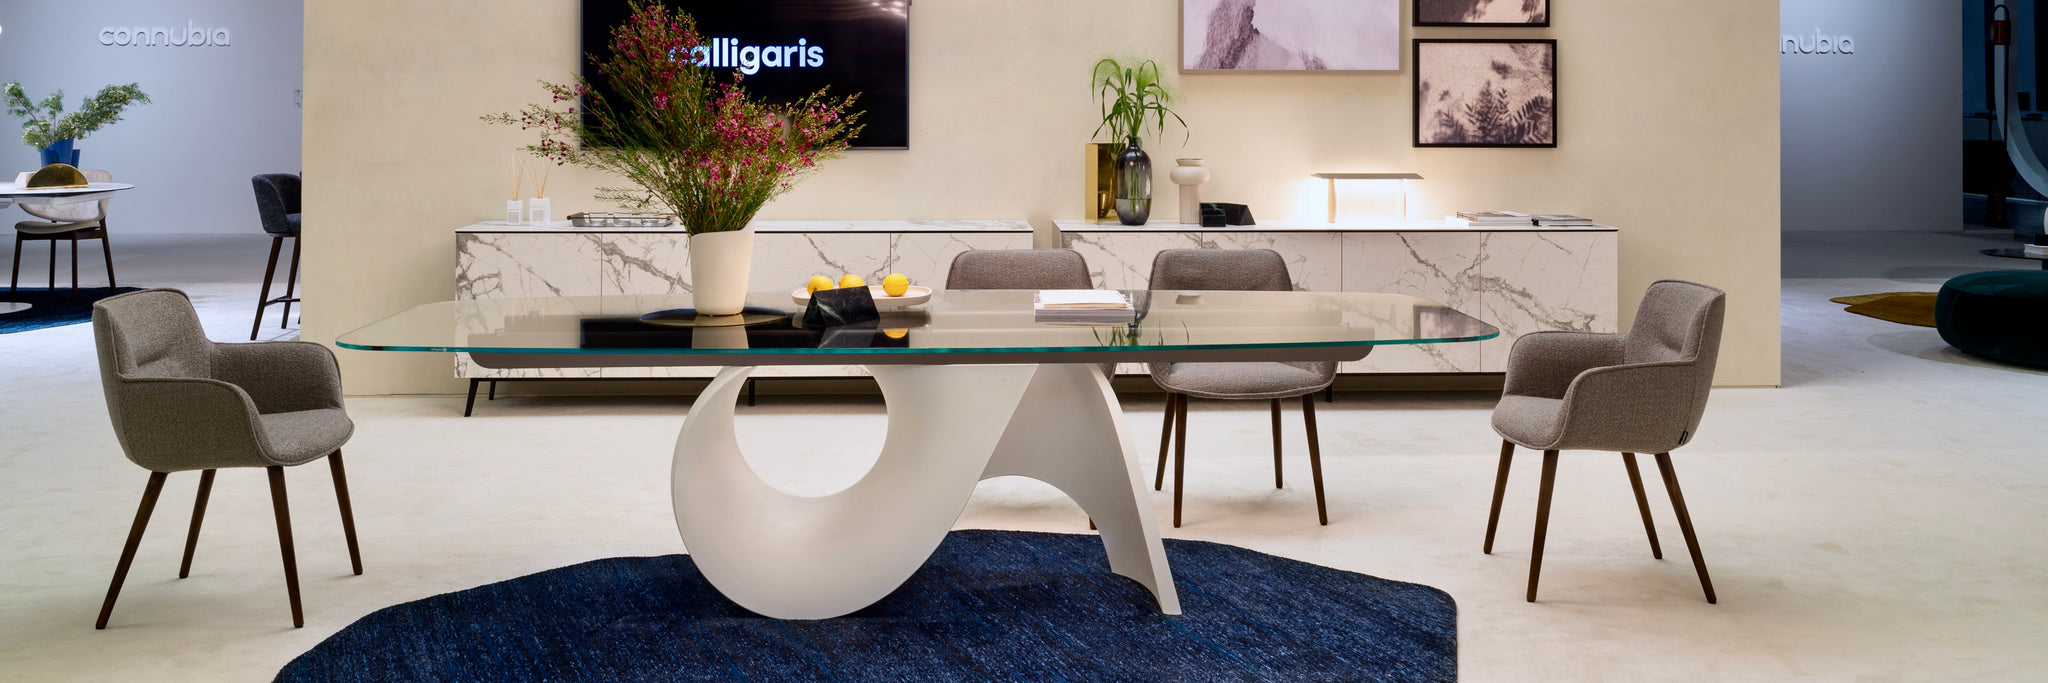 Calligaris Seashell Table Salone Del Mobile